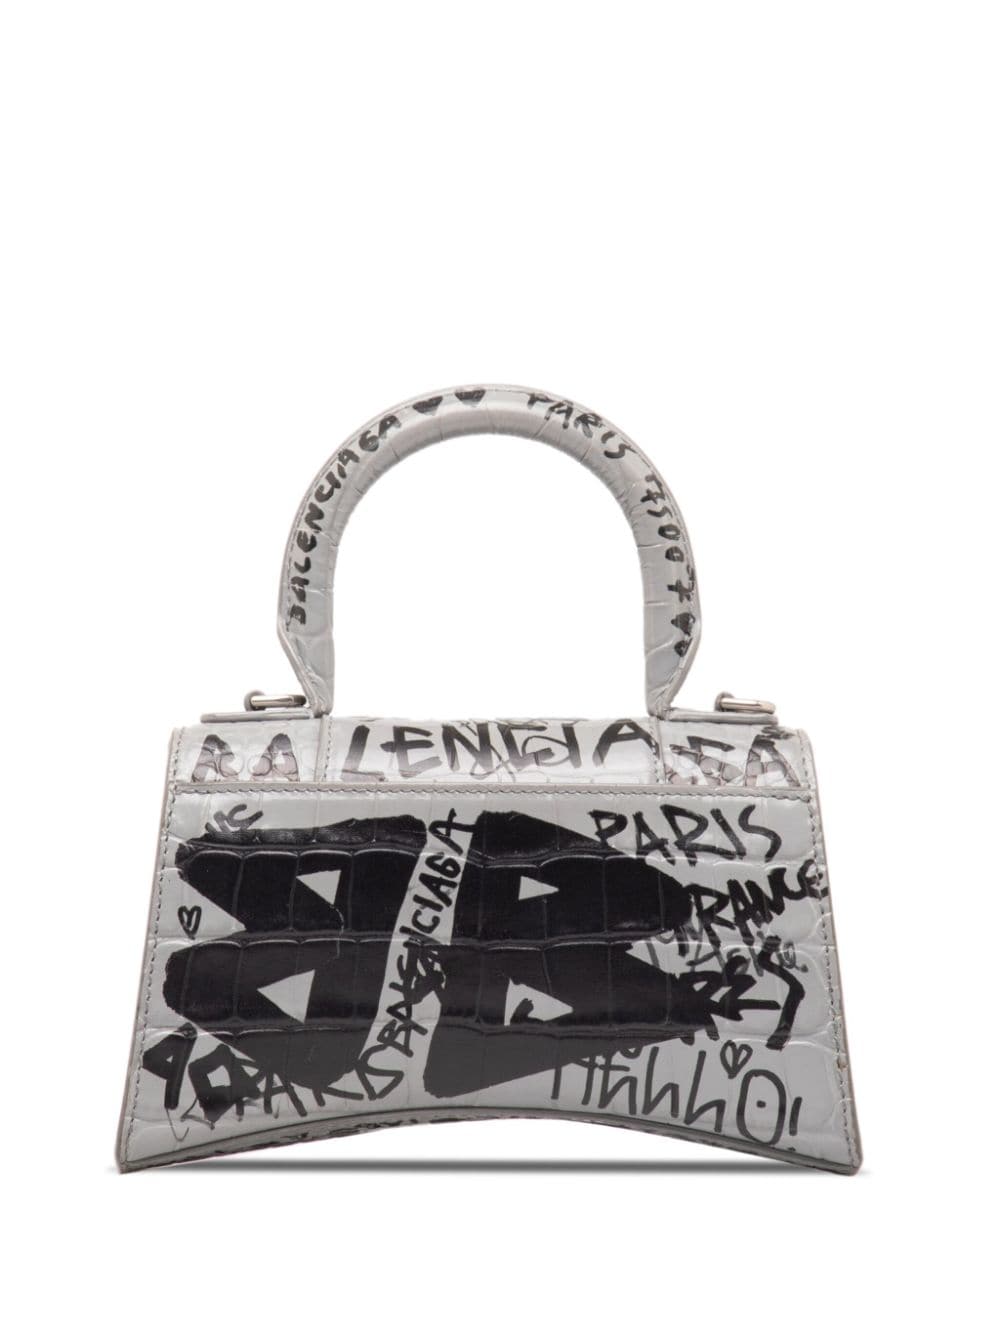 Balenciaga Pre-Owned 2020 XS Hourglass Graffiti Top Handle Bag satchel - Grijs